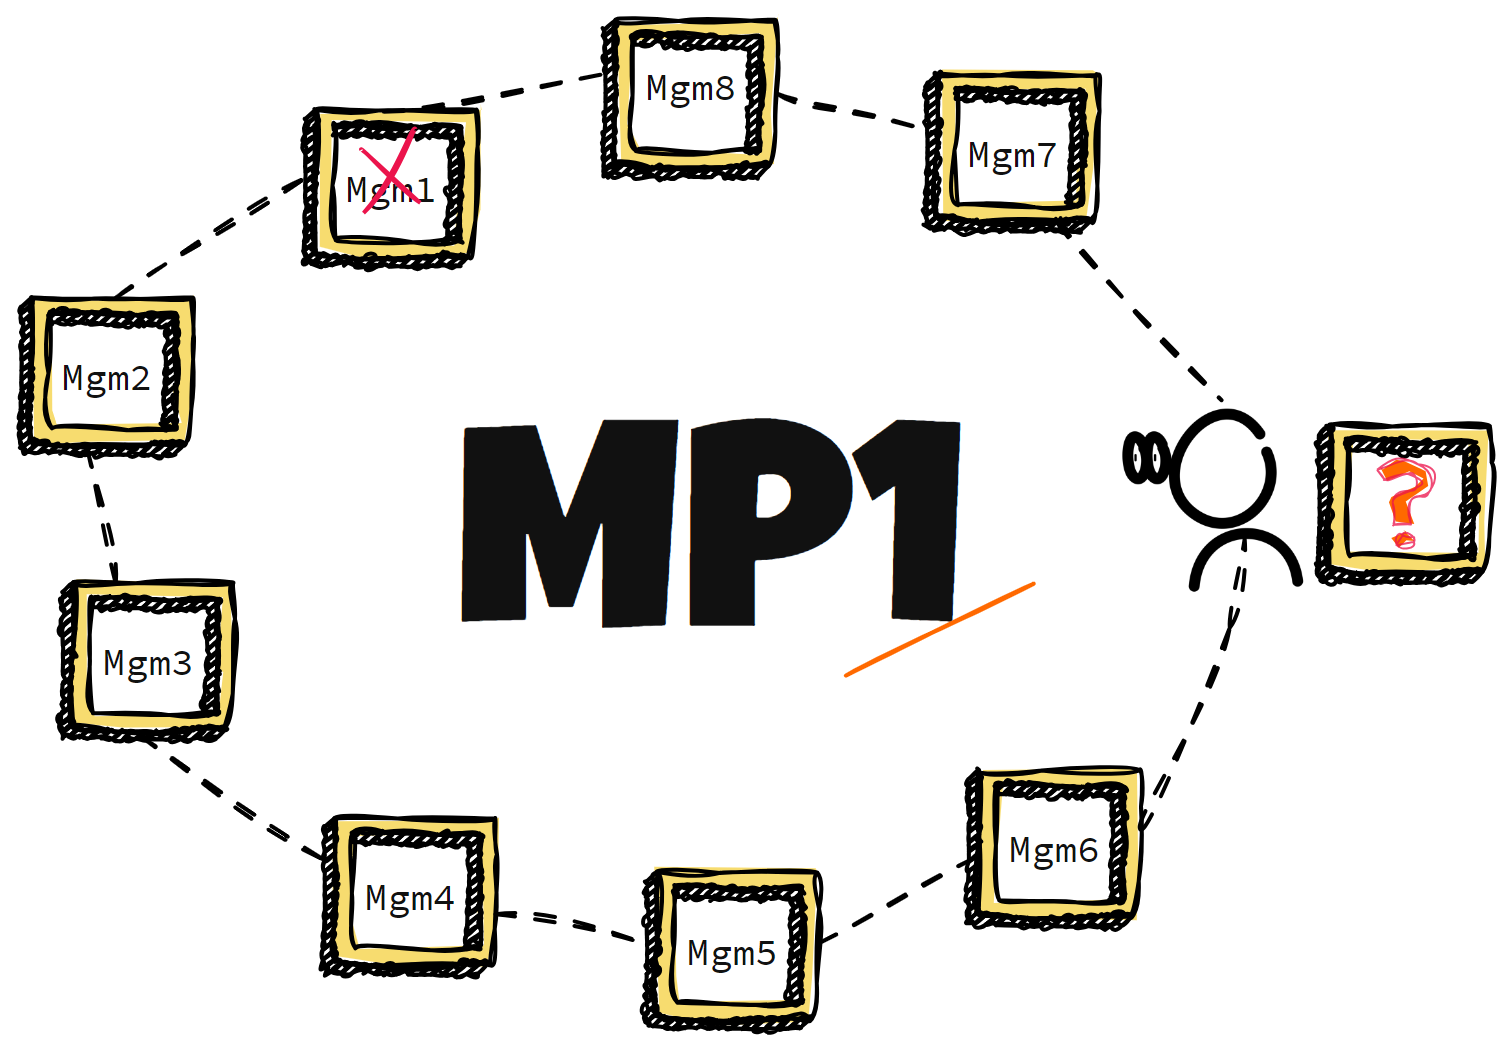 MP1 image